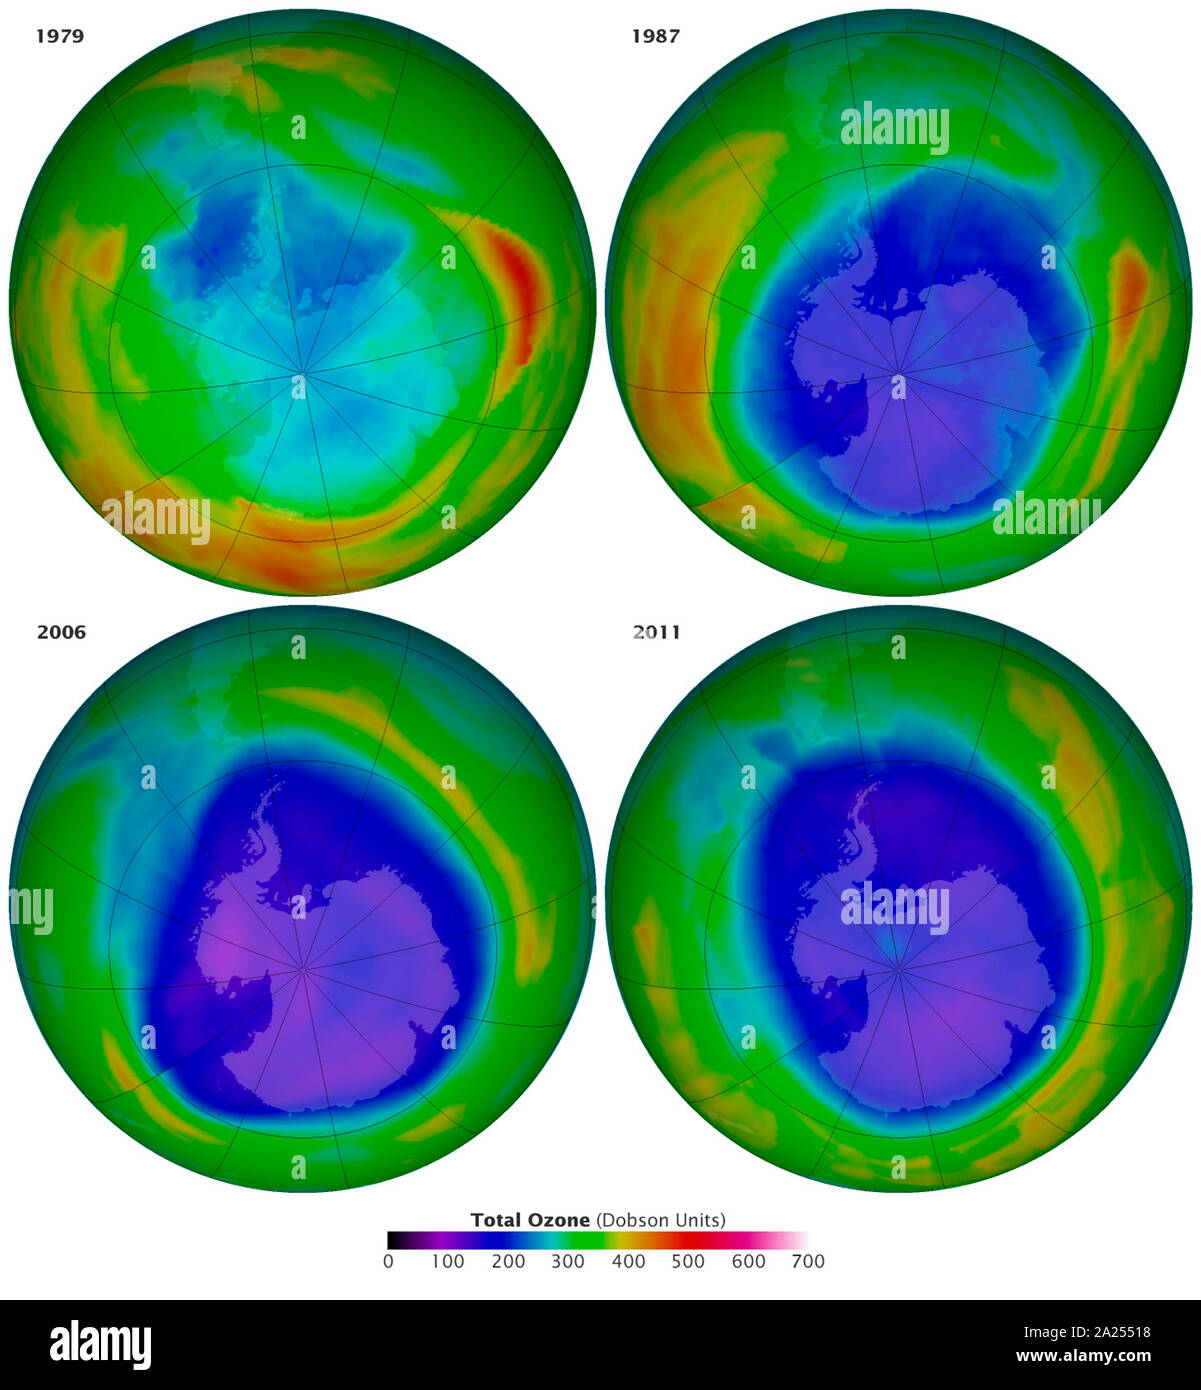 Vier Bilder zeigen das antarktische Ozonloch an Sept. 16 1979, 1987, 2006 und 2011. Die letzten beiden Bilder zeigen den niedrigsten (2006) und zweite - am niedrigsten (2011) Ozonkonzentrationen, wie in Blau dargestellt, und wurden von der OMI-Instrument auf die Aura Satelliten erfasst.&#13;&#10; Stockfoto